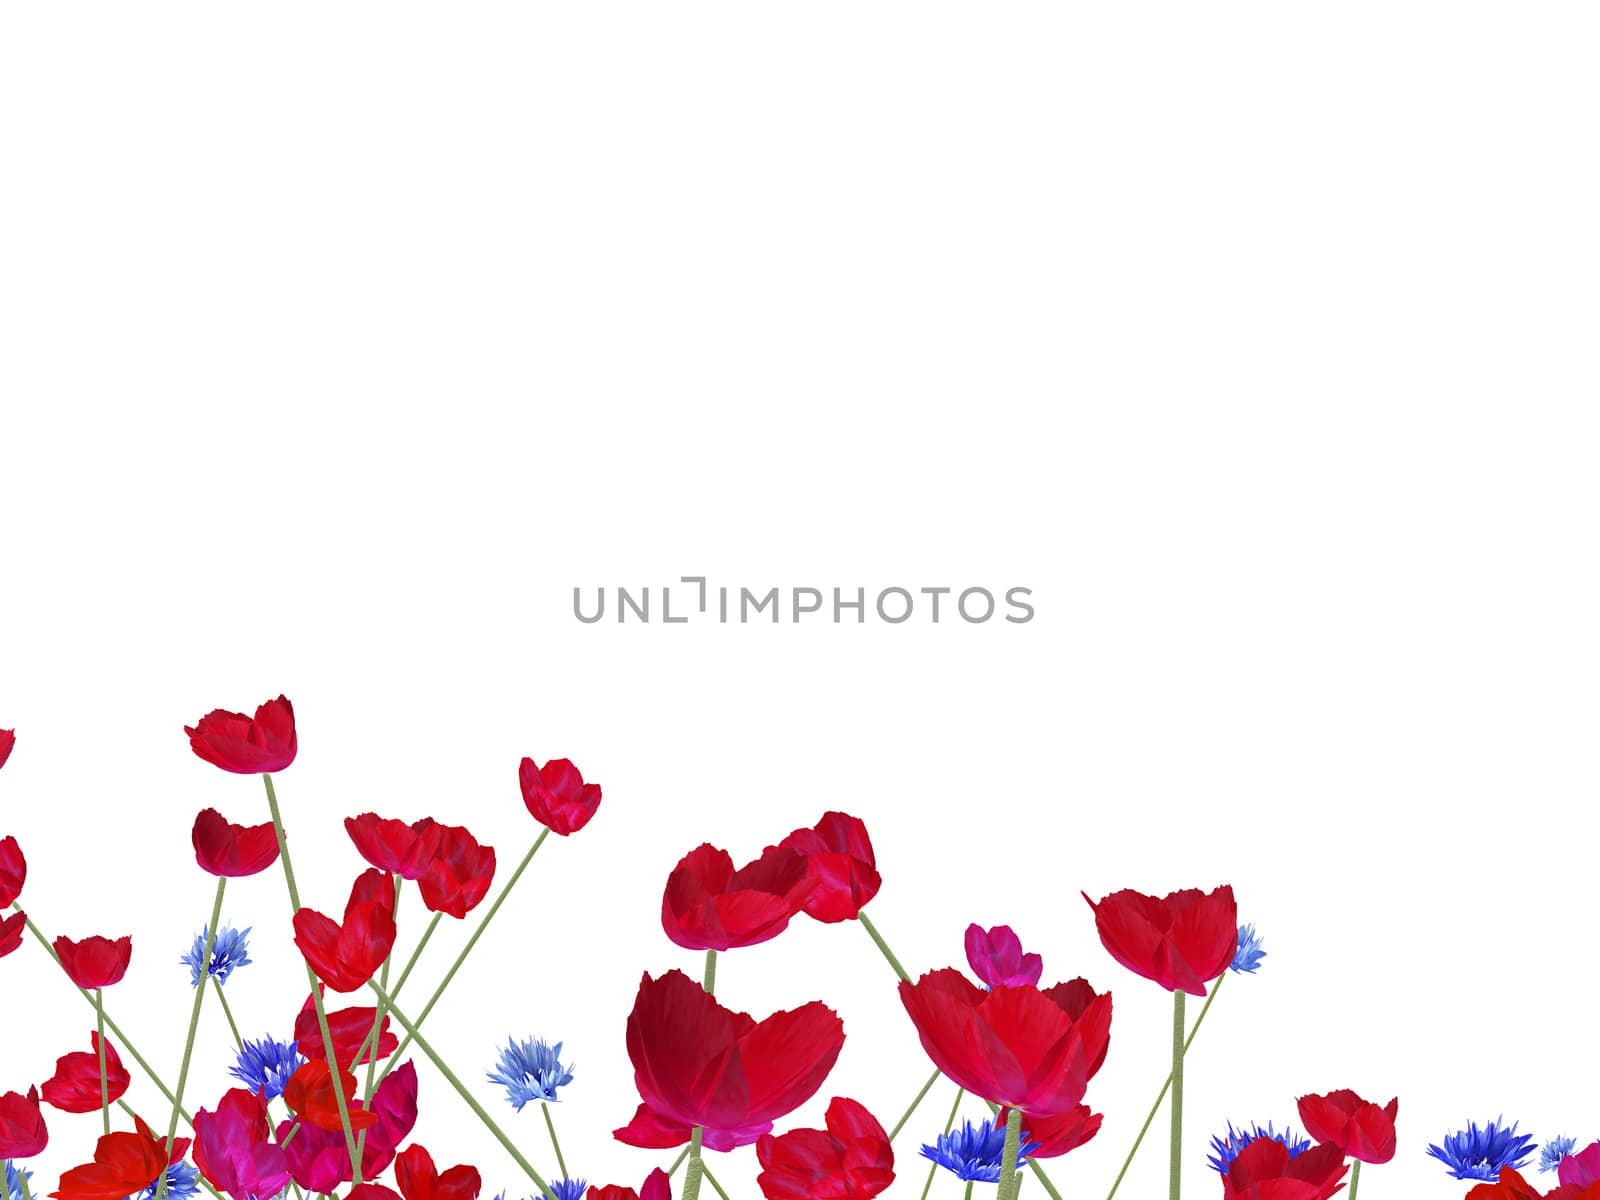 poppy field background by paddythegolfer